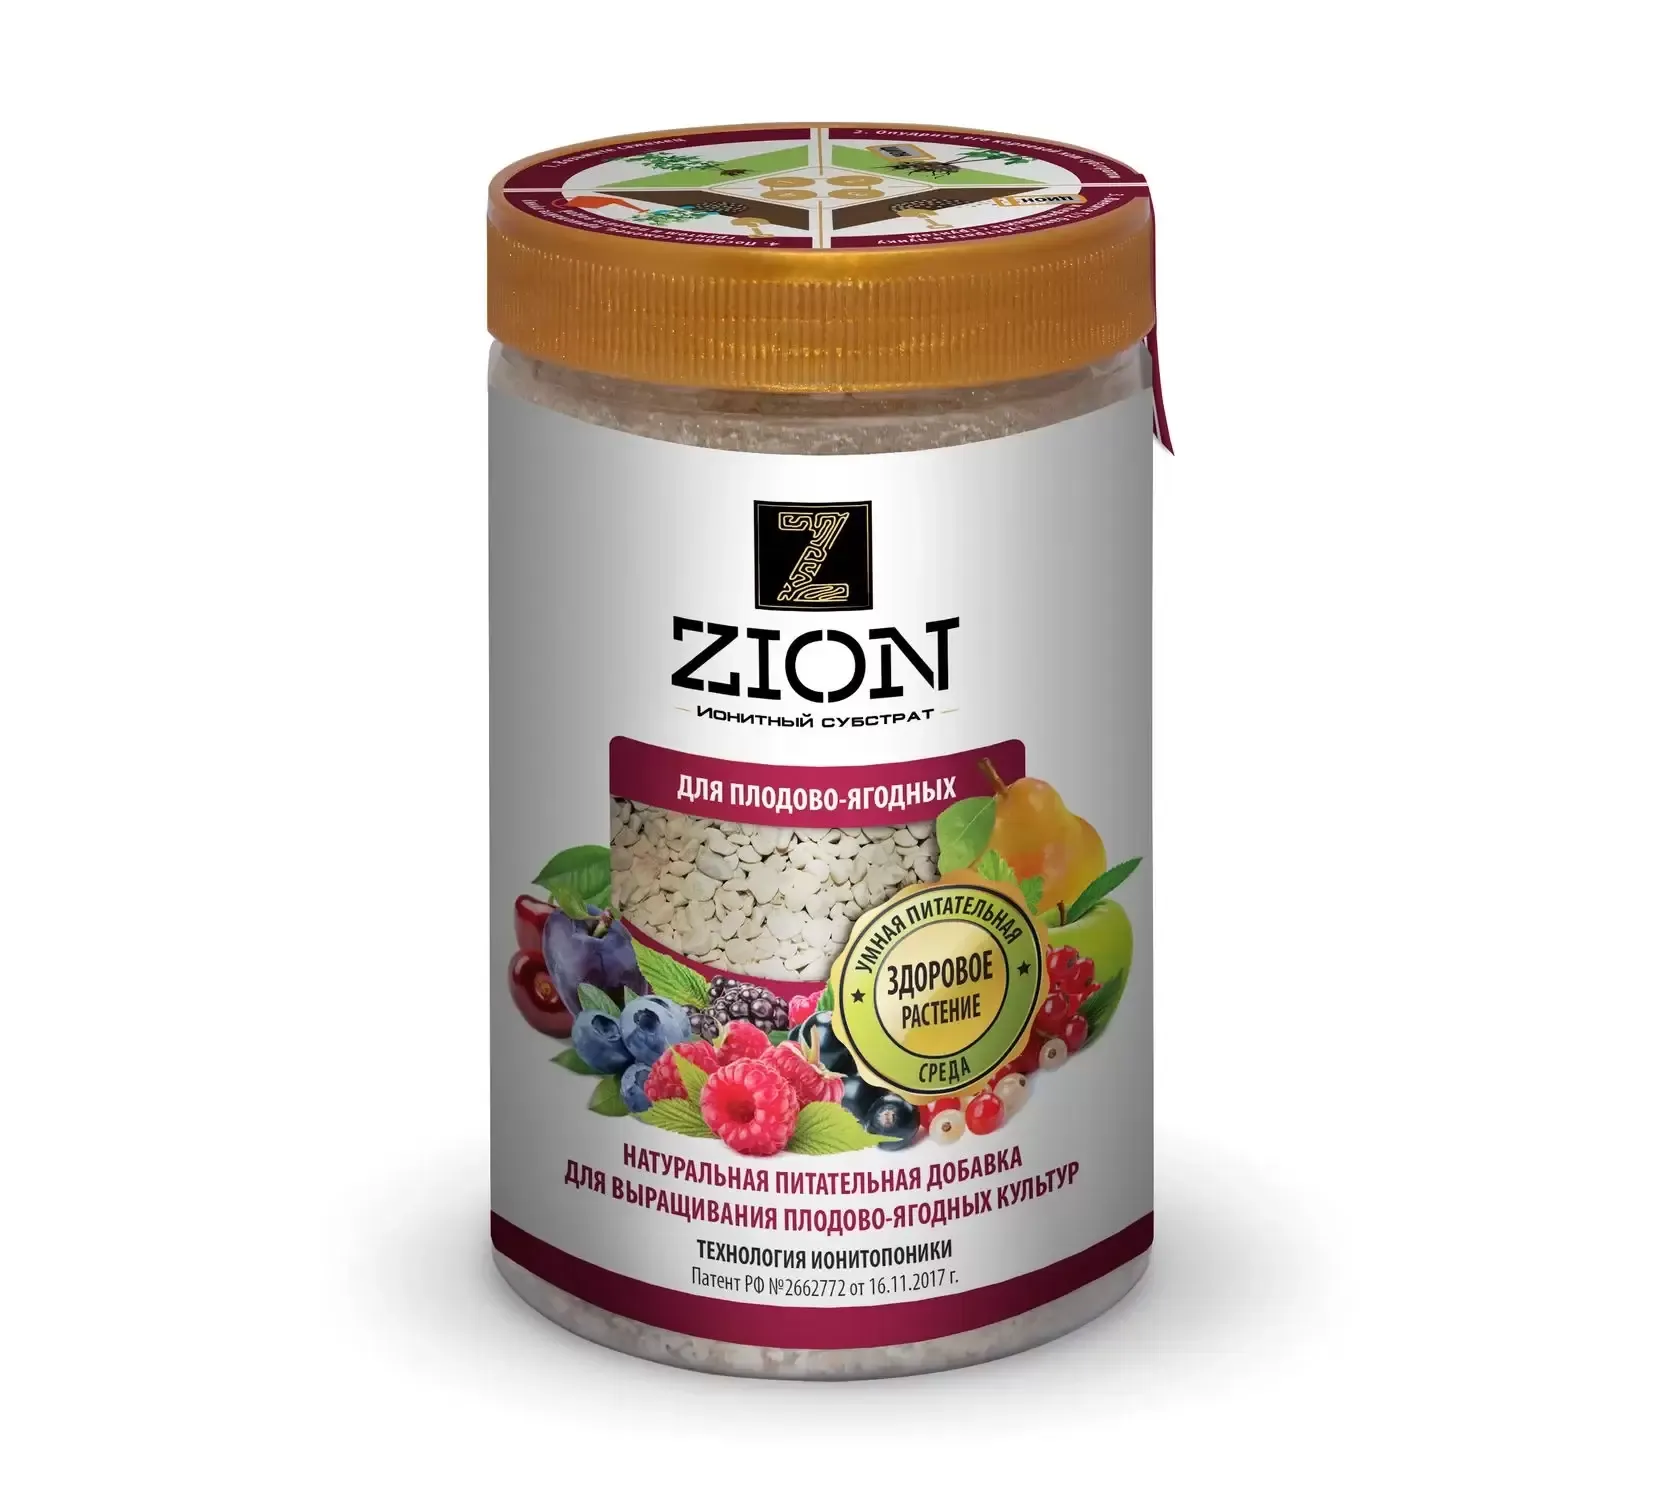 Питательная добавка ZION для плодово-ягодных, 700гр